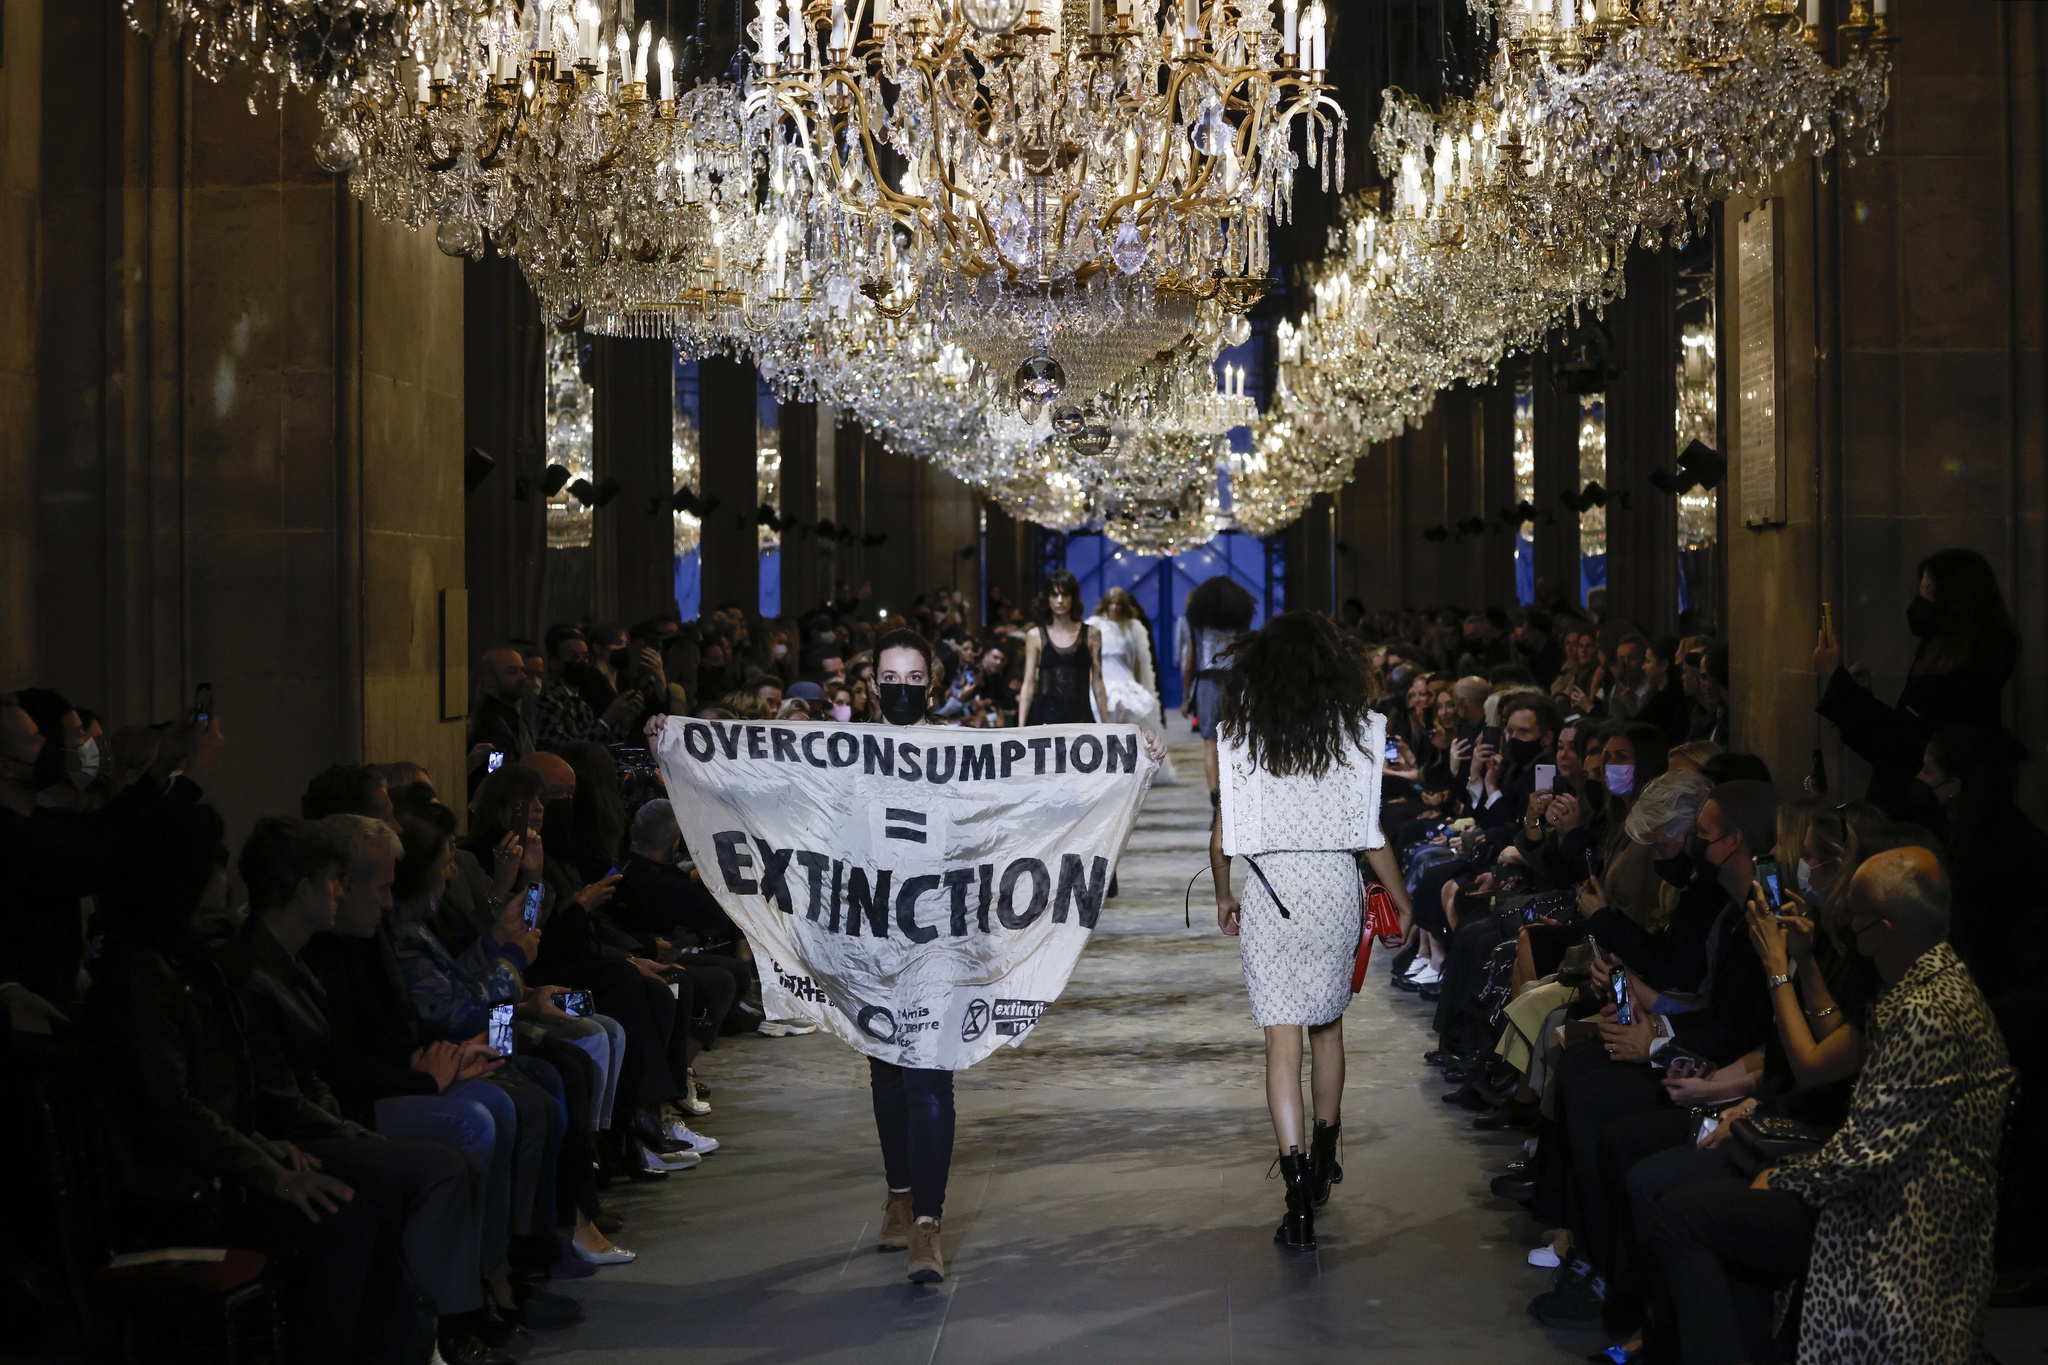 A Louis Vuitton deu um baile no Louvre. Perdão, um desfile - Moda